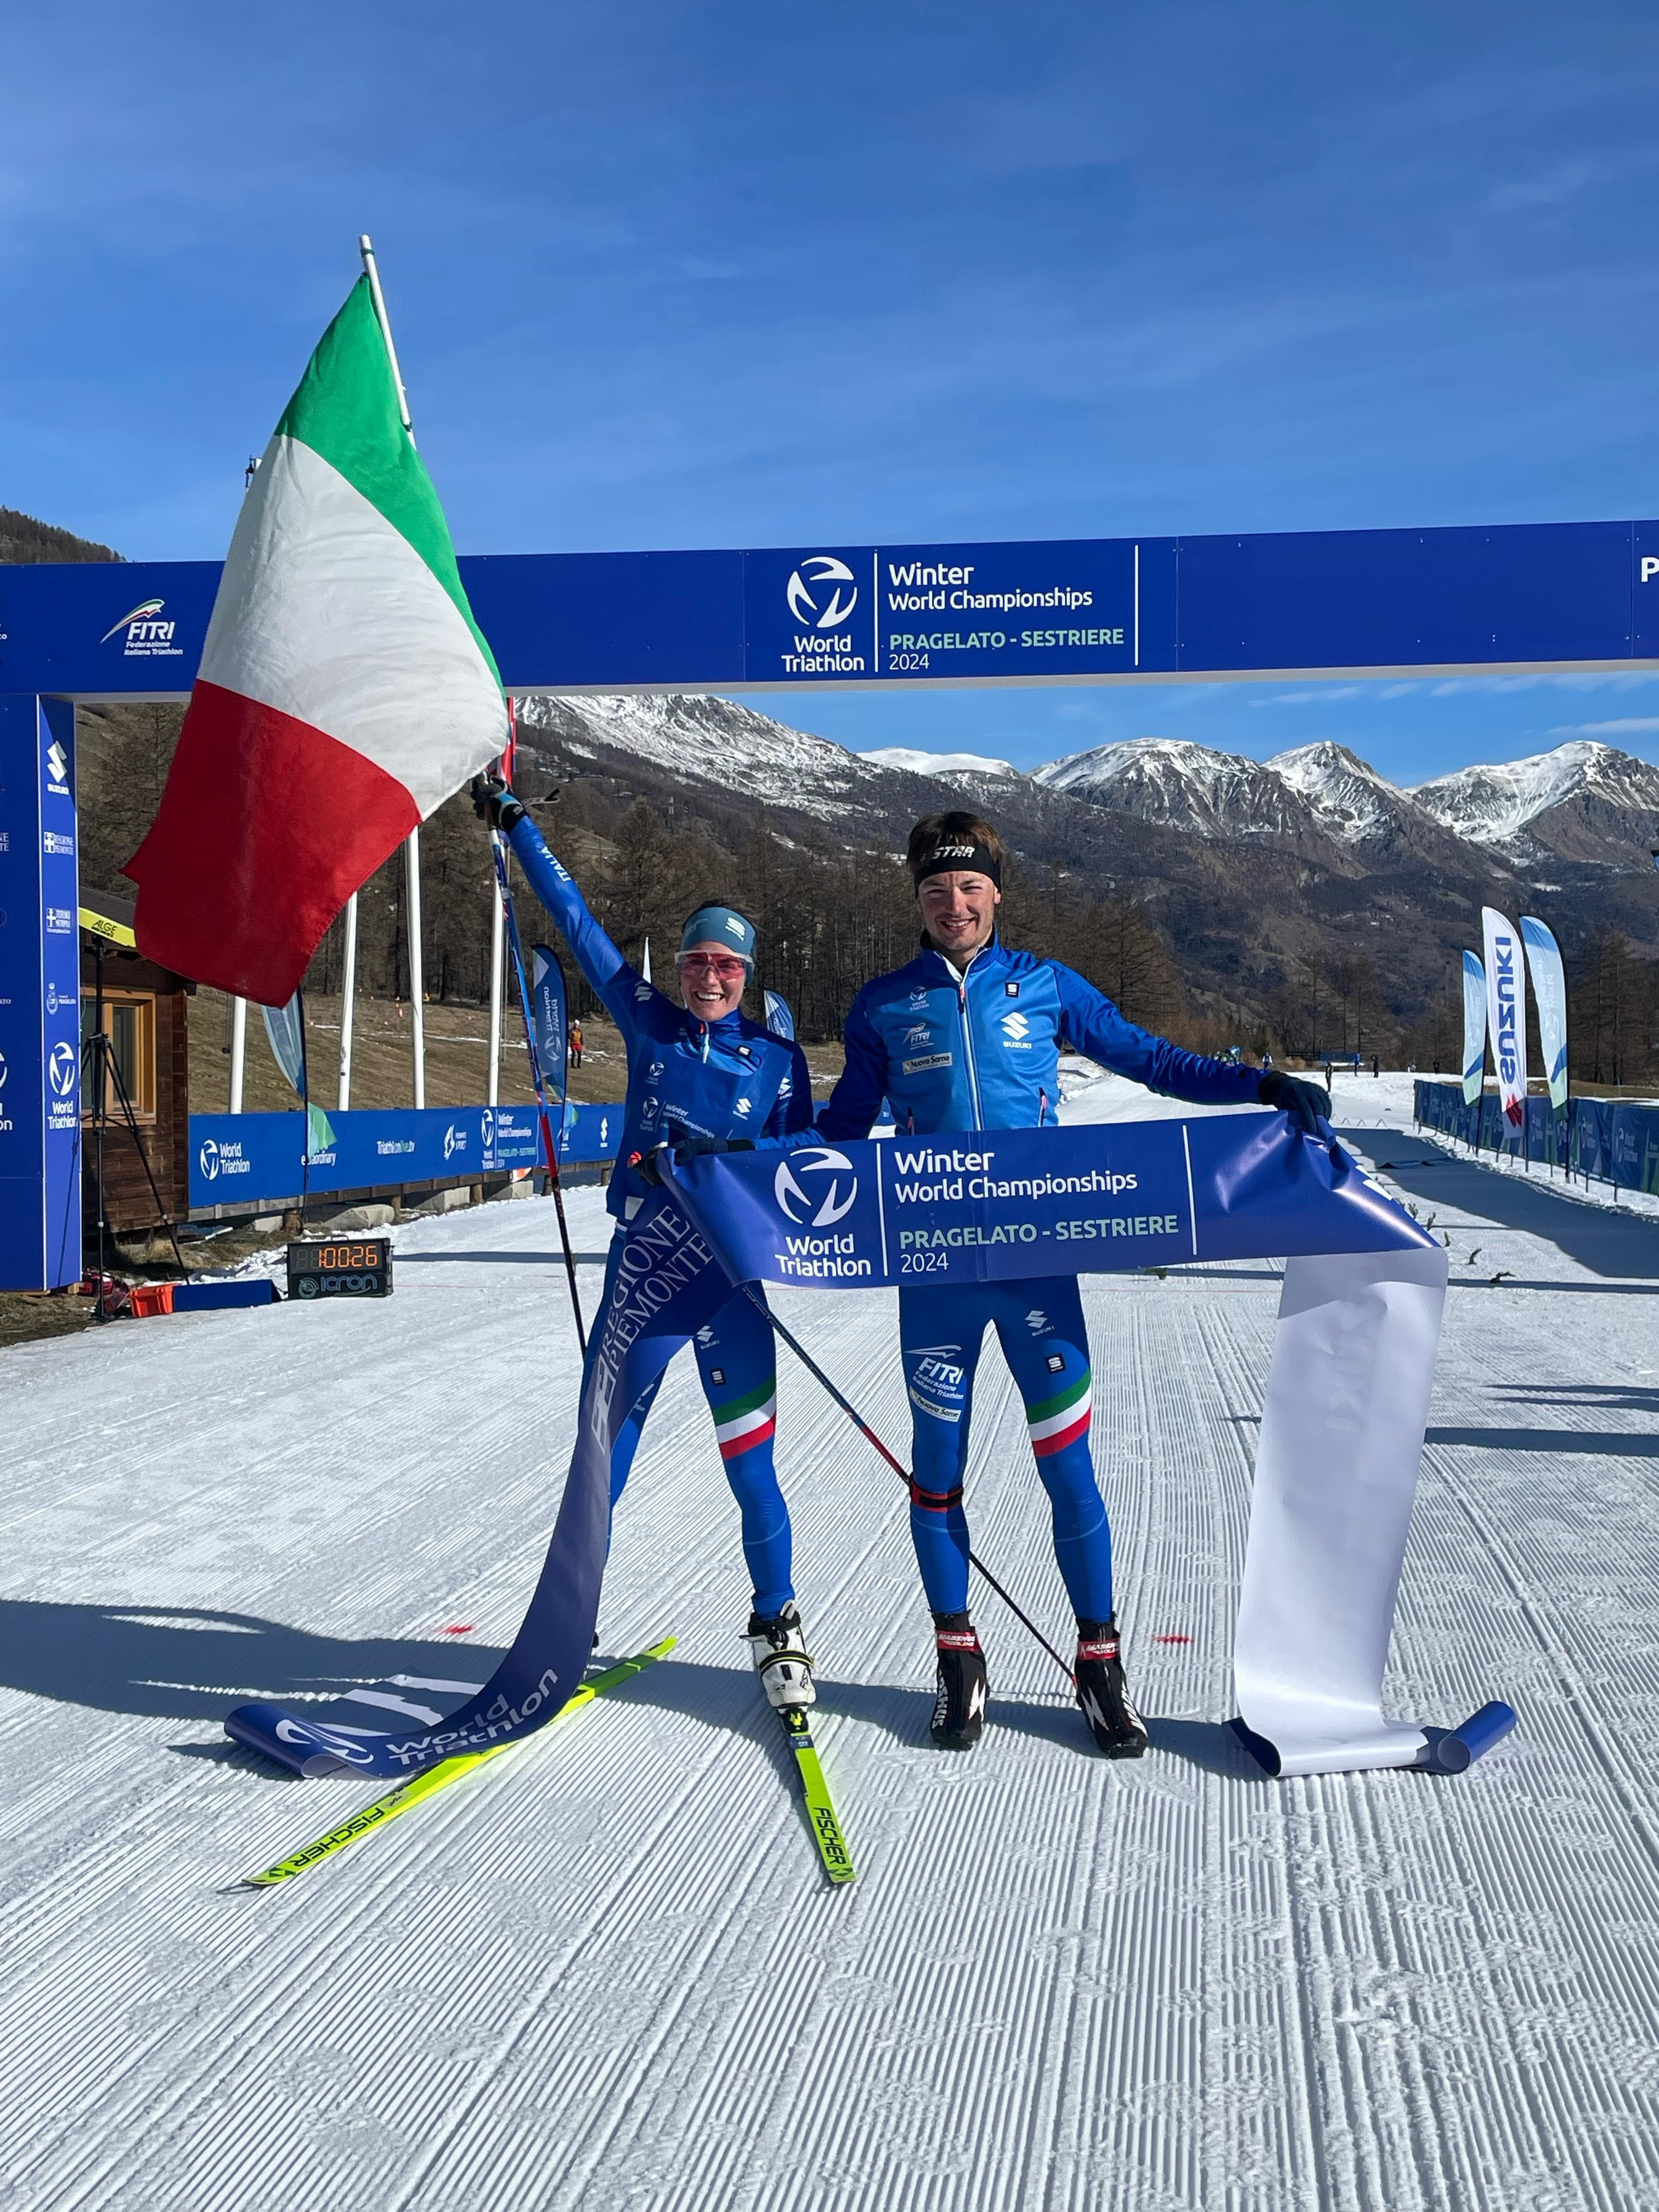 Mondiali di Winter Triathlon, Pesavento e Mairhofer campioni del mondo nella Mixed Relay